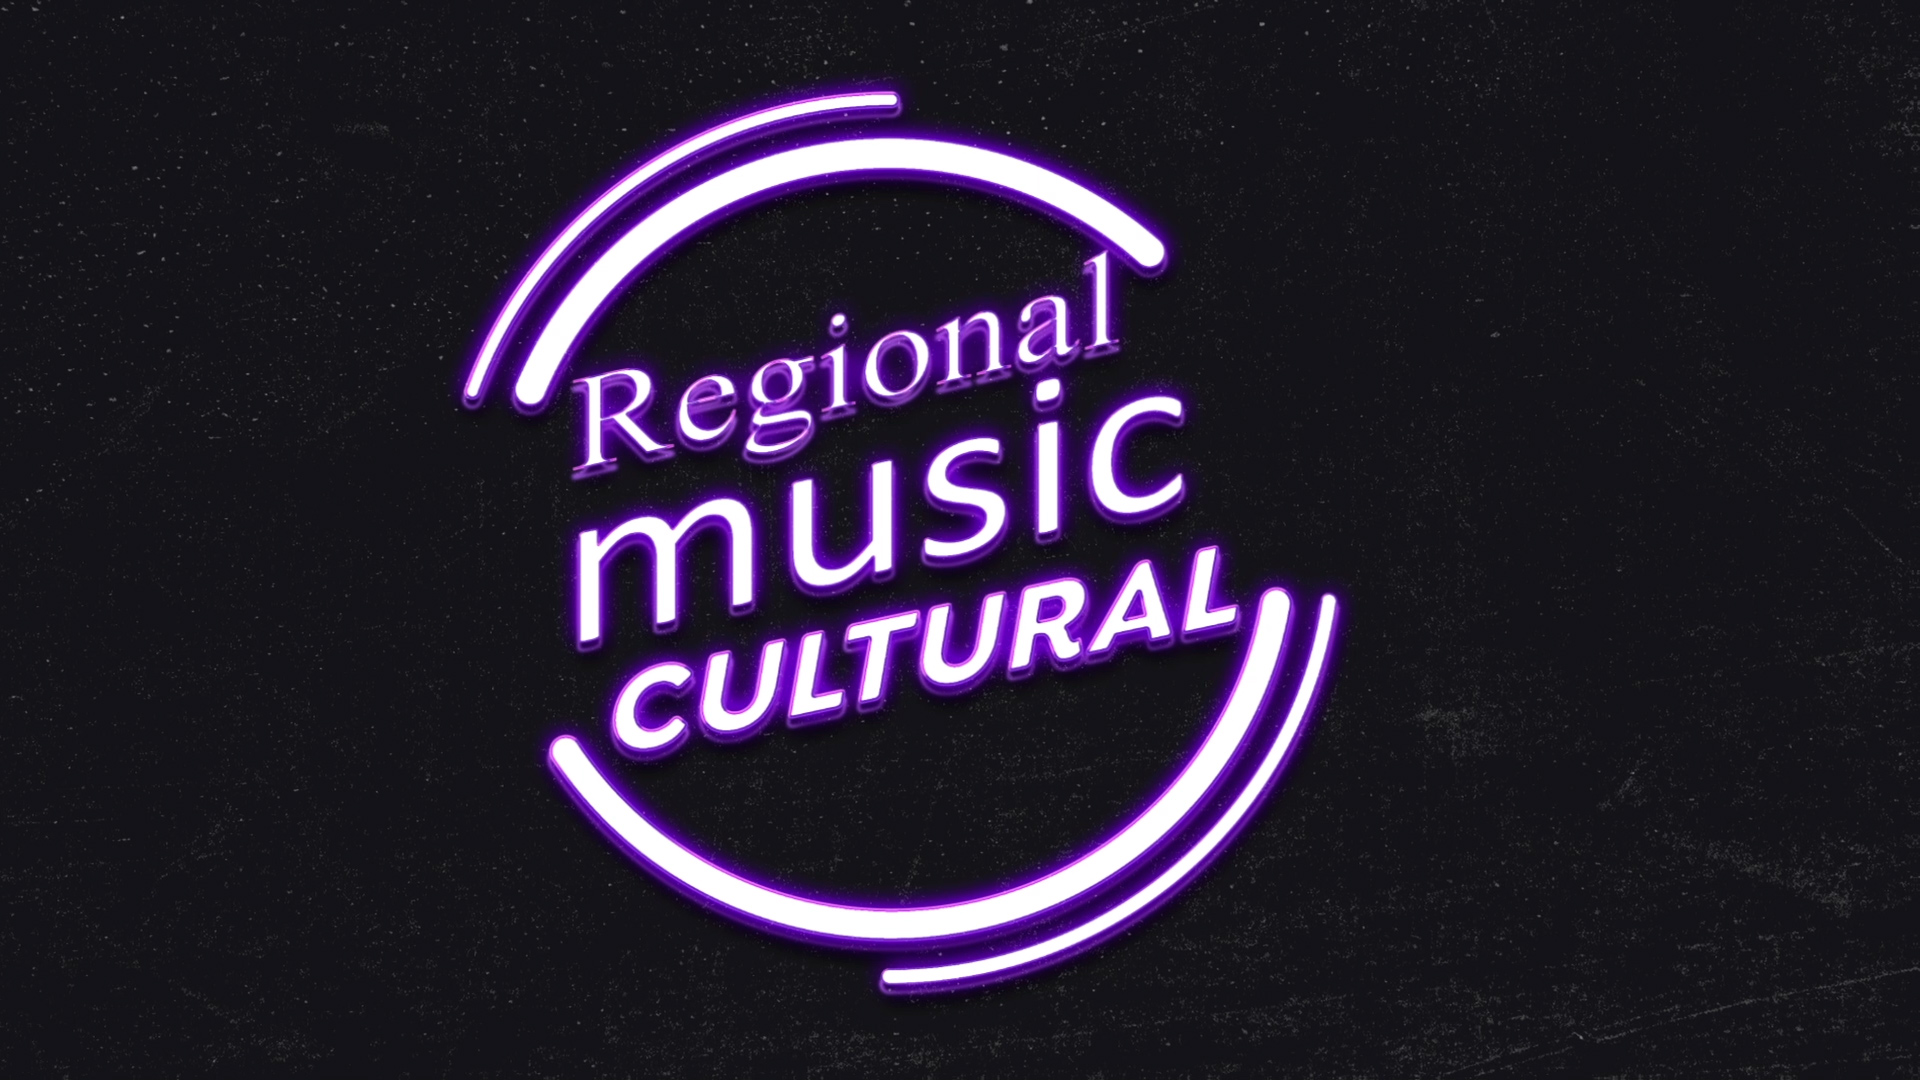 Regional Music Cultural1